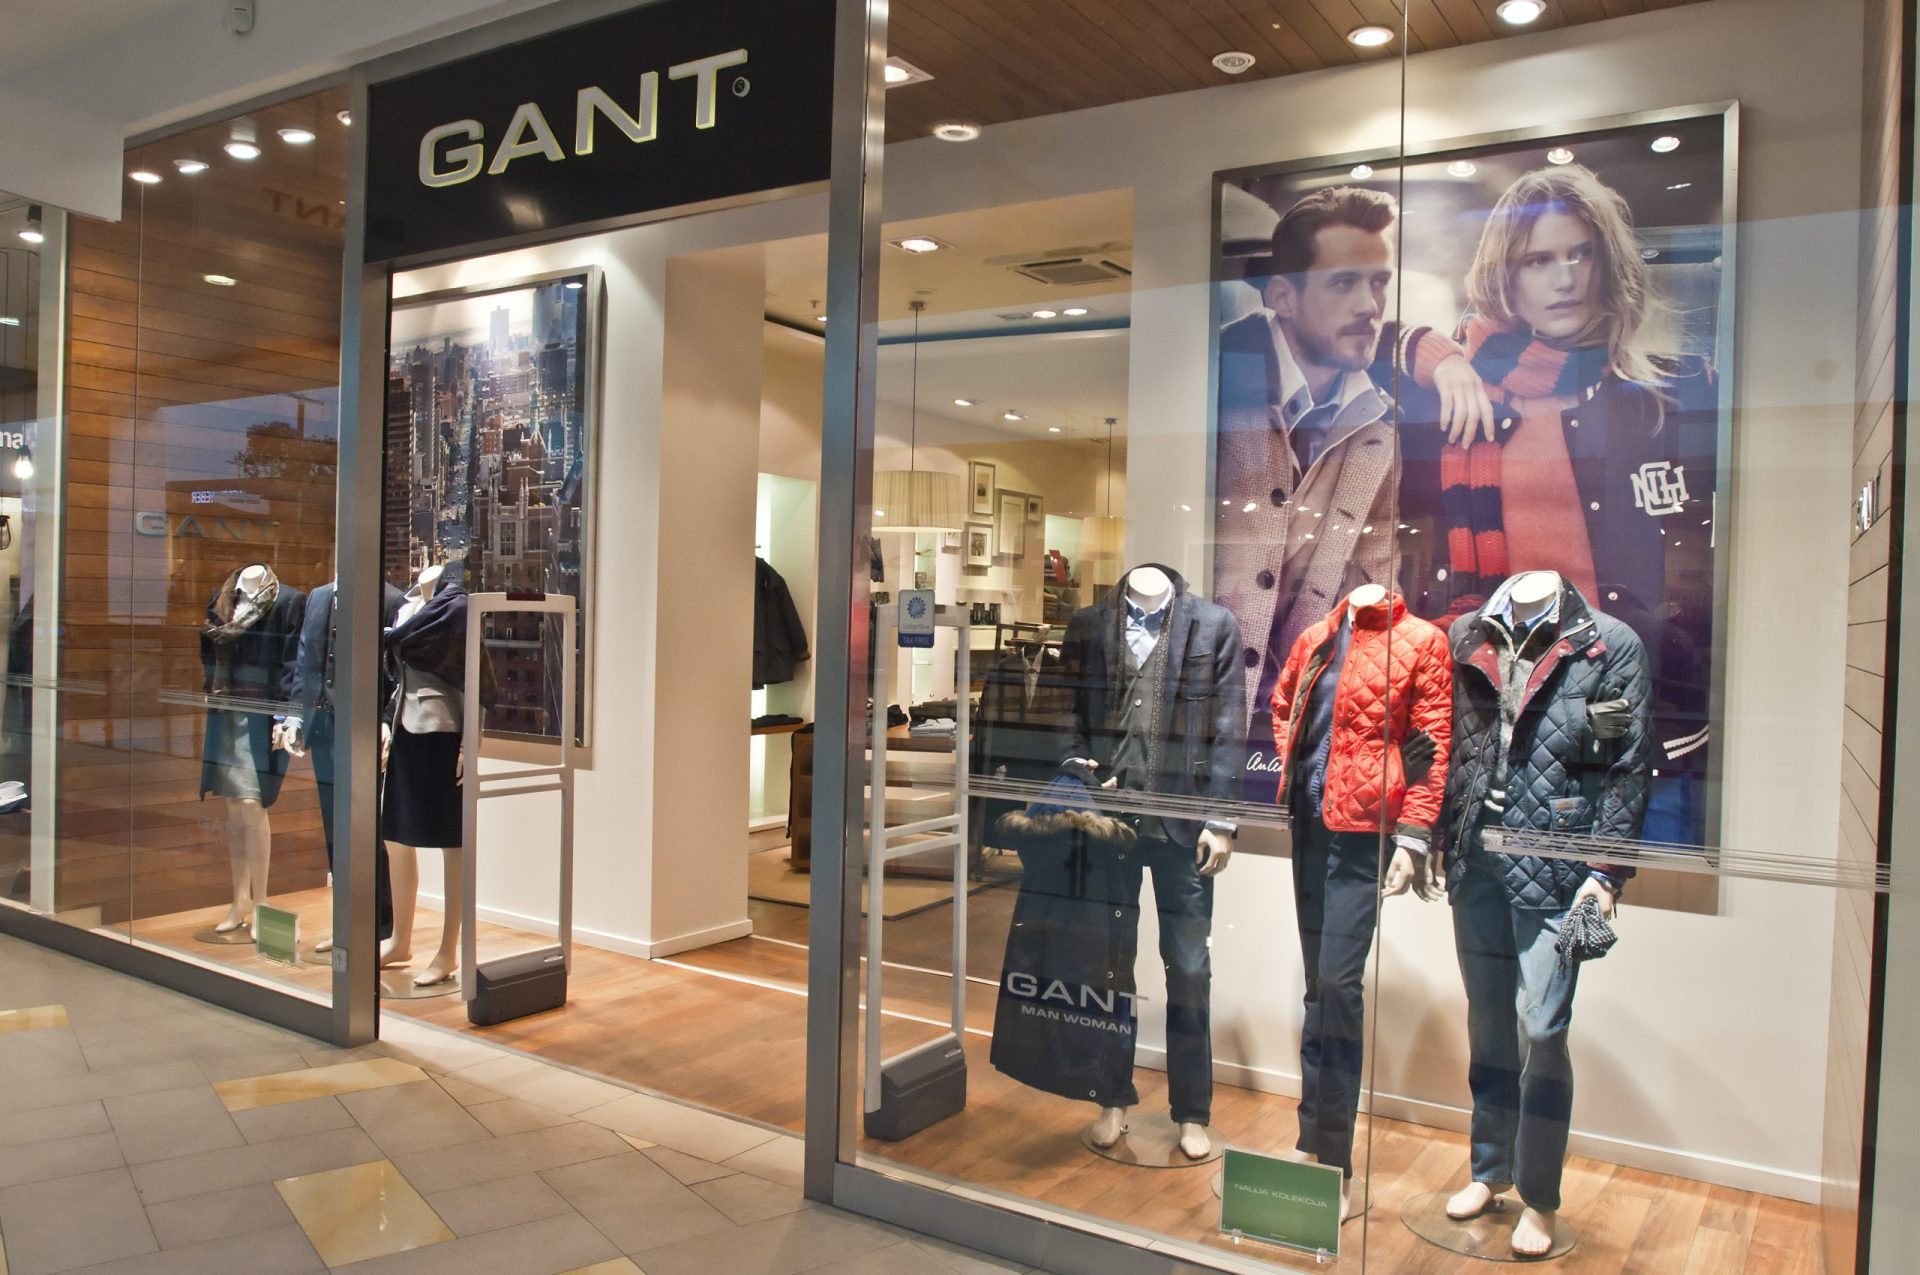 Grupo que detém marca Gant em Portugal à beira da falência